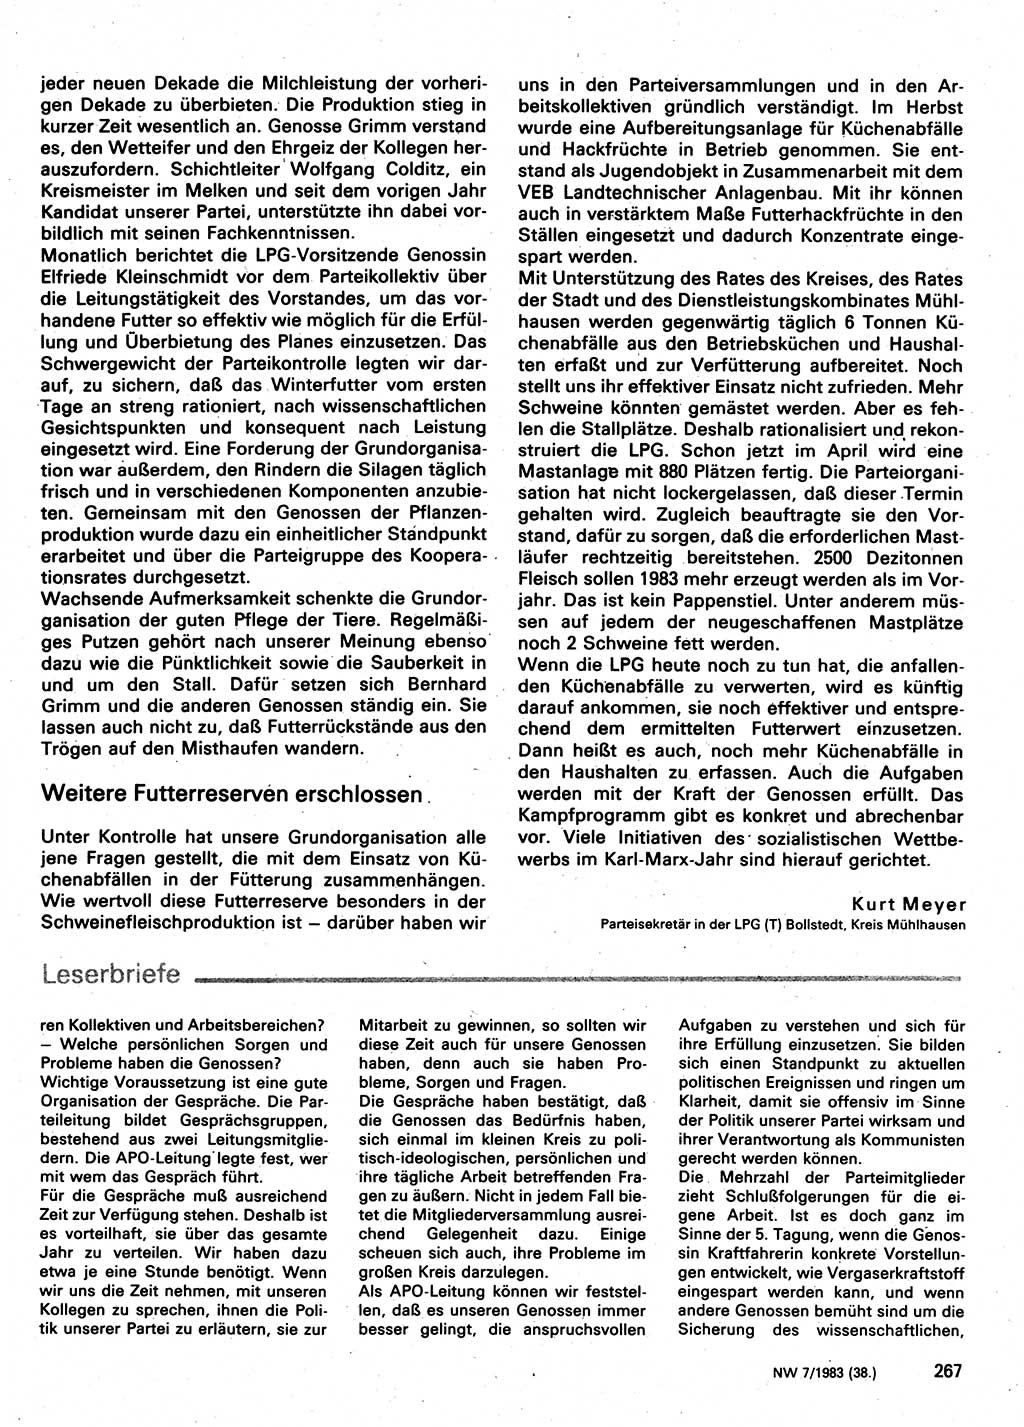 Neuer Weg (NW), Organ des Zentralkomitees (ZK) der SED (Sozialistische Einheitspartei Deutschlands) für Fragen des Parteilebens, 38. Jahrgang [Deutsche Demokratische Republik (DDR)] 1983, Seite 267 (NW ZK SED DDR 1983, S. 267)